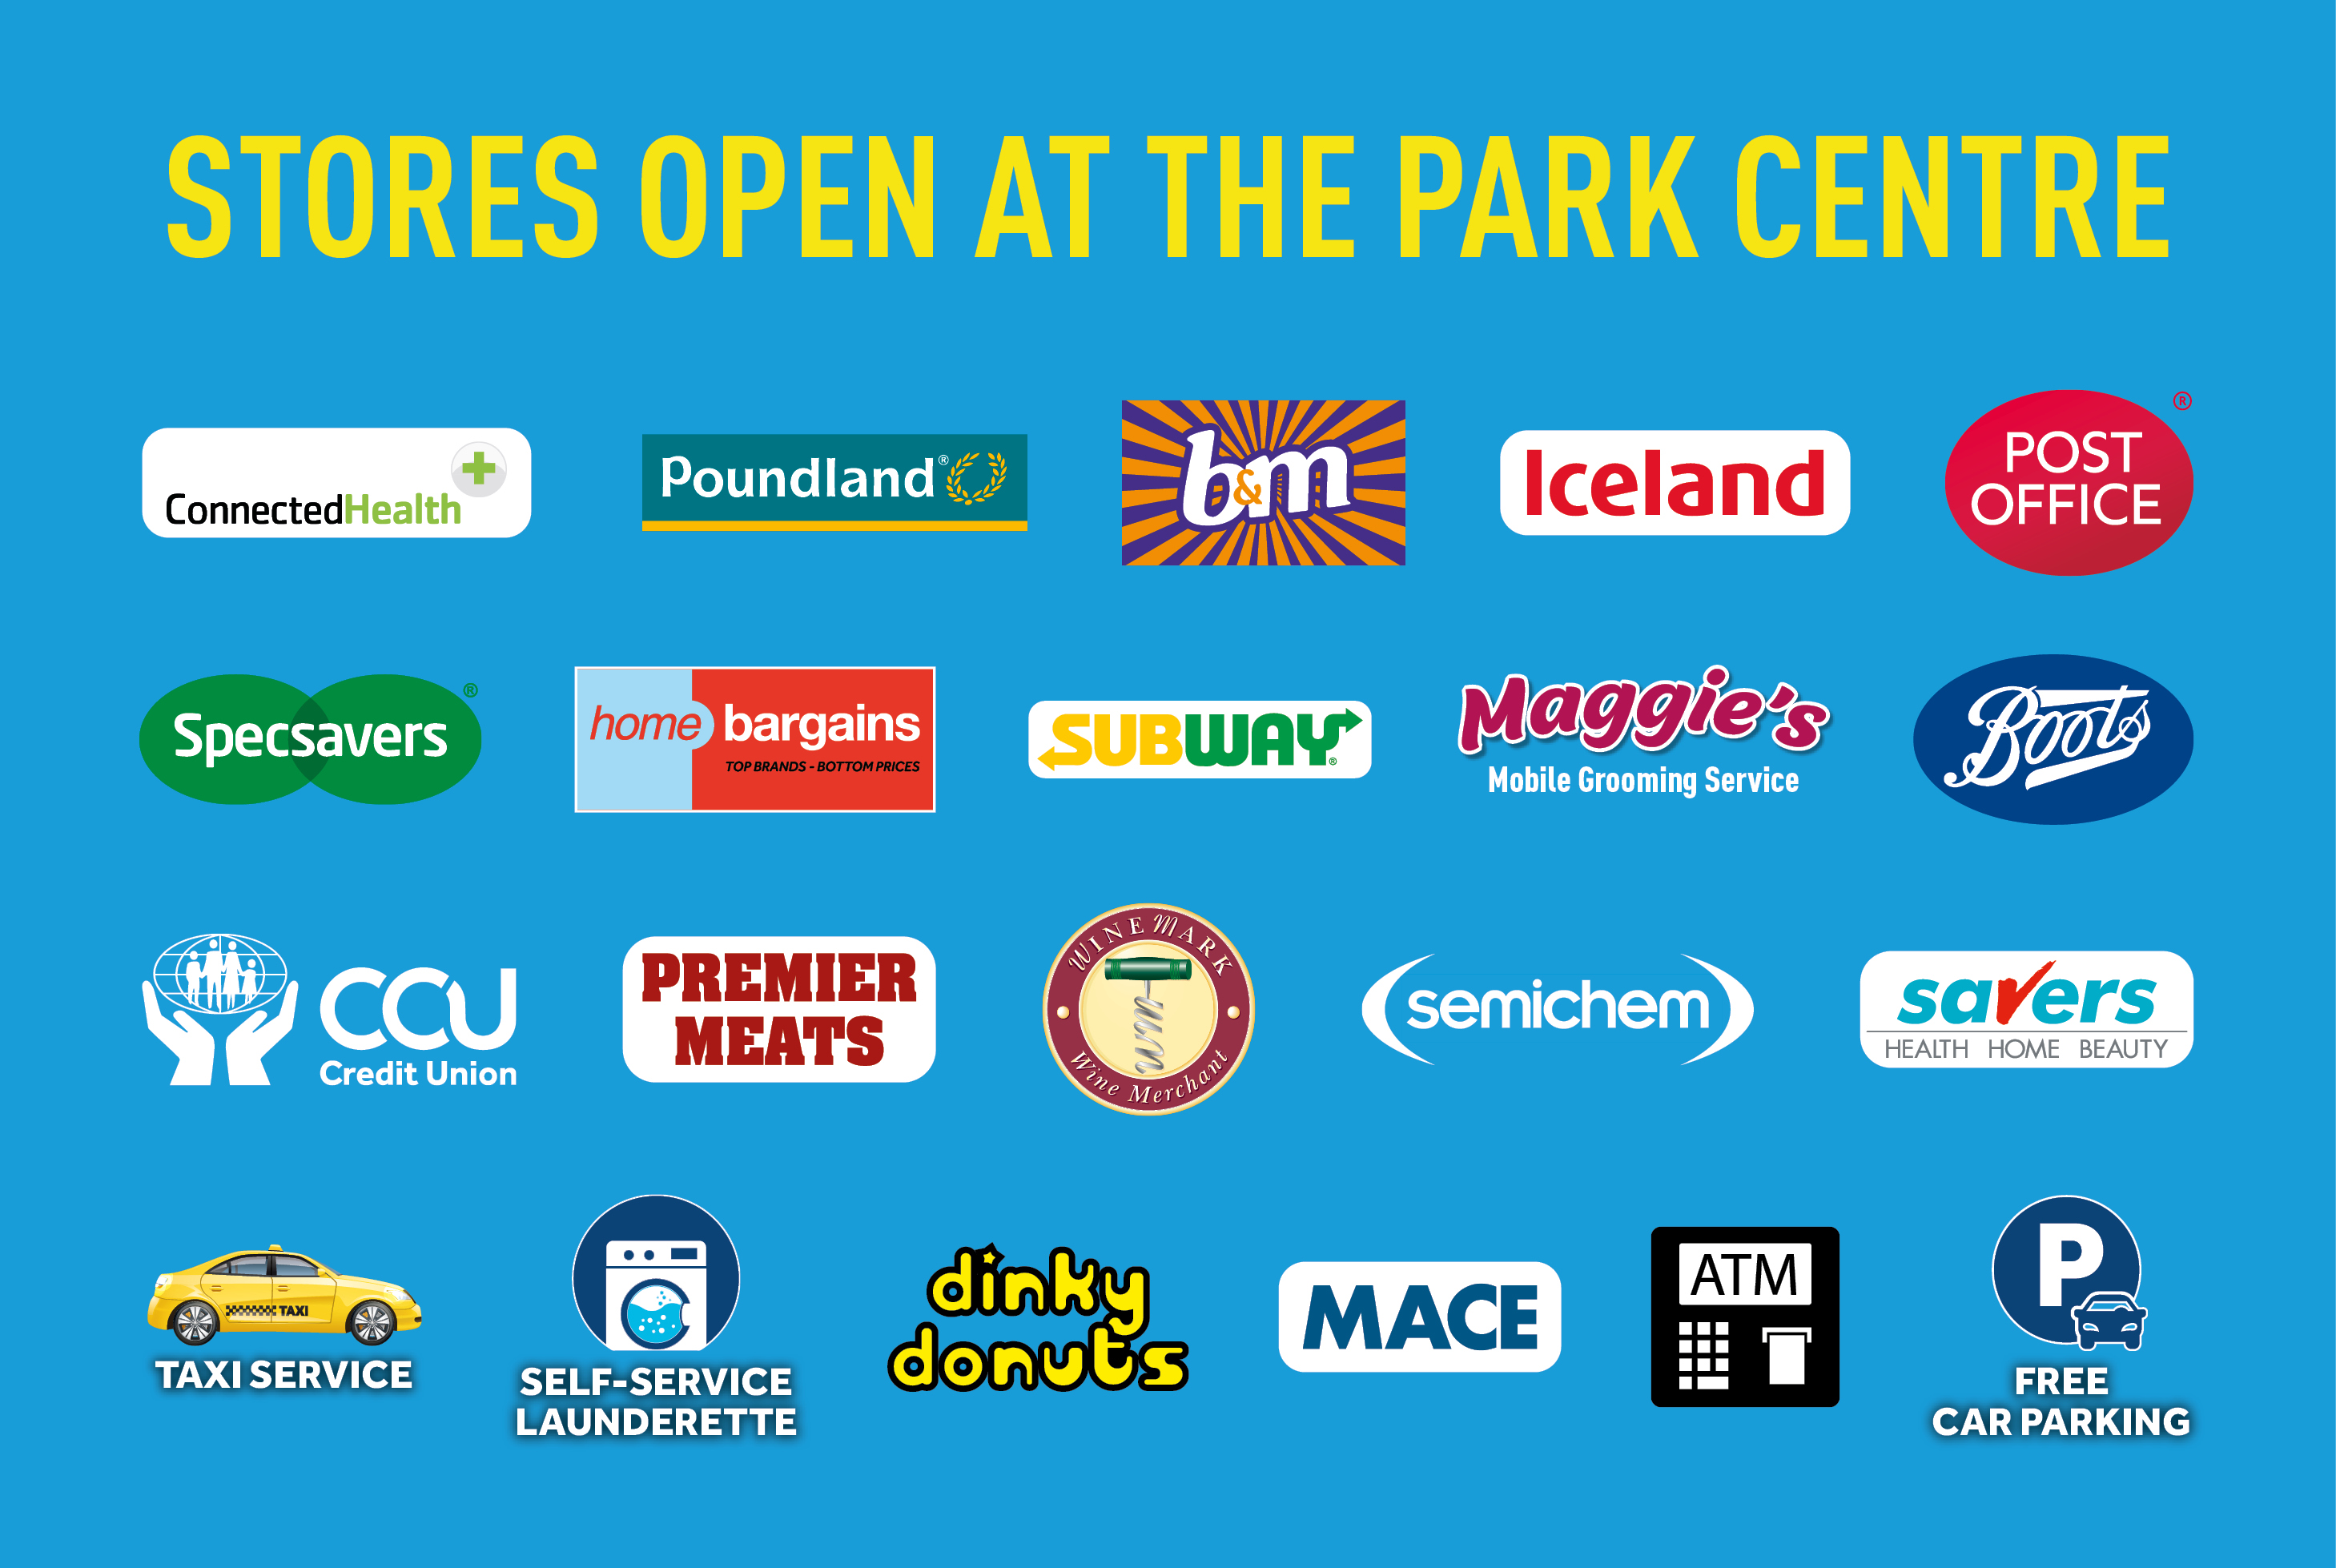 Stores open Jan 2021 Park Centre